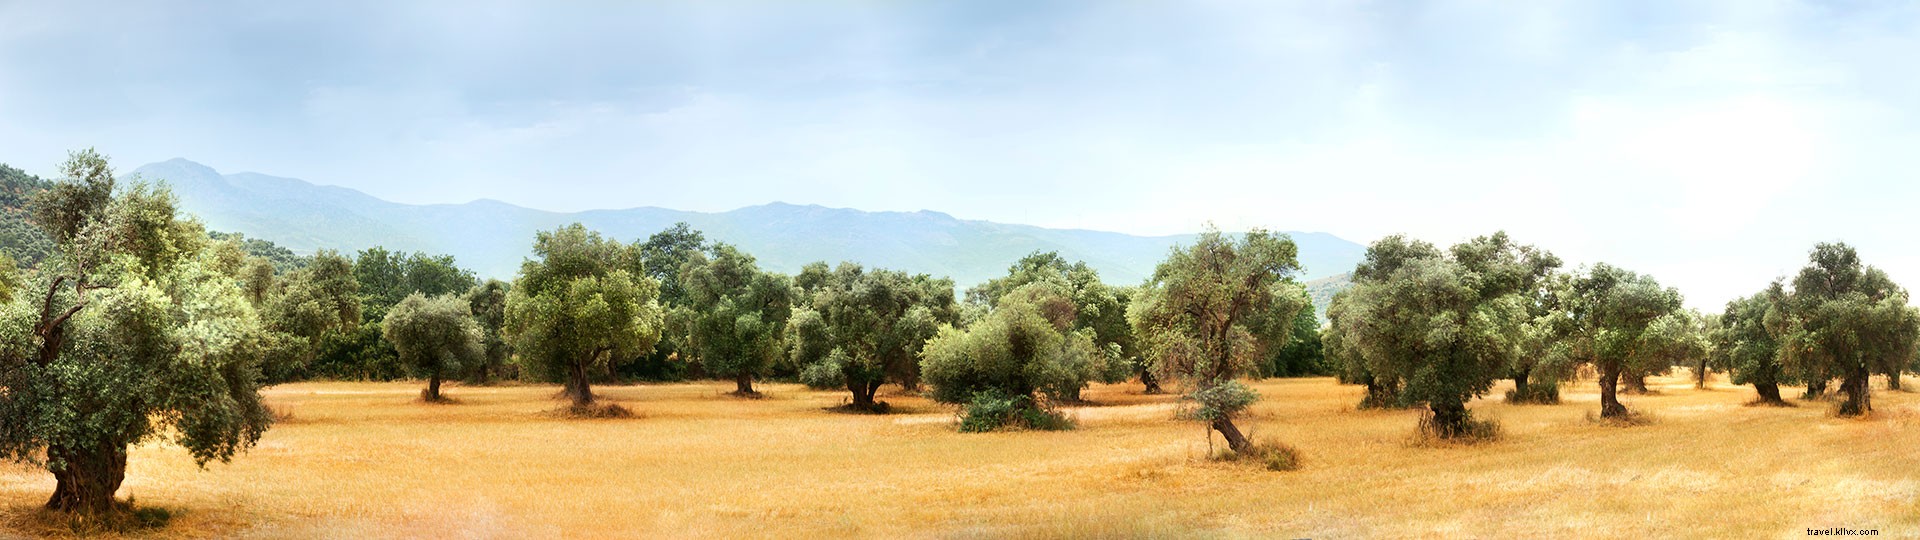 Los mejores planes de turismo en aceite de oliva 